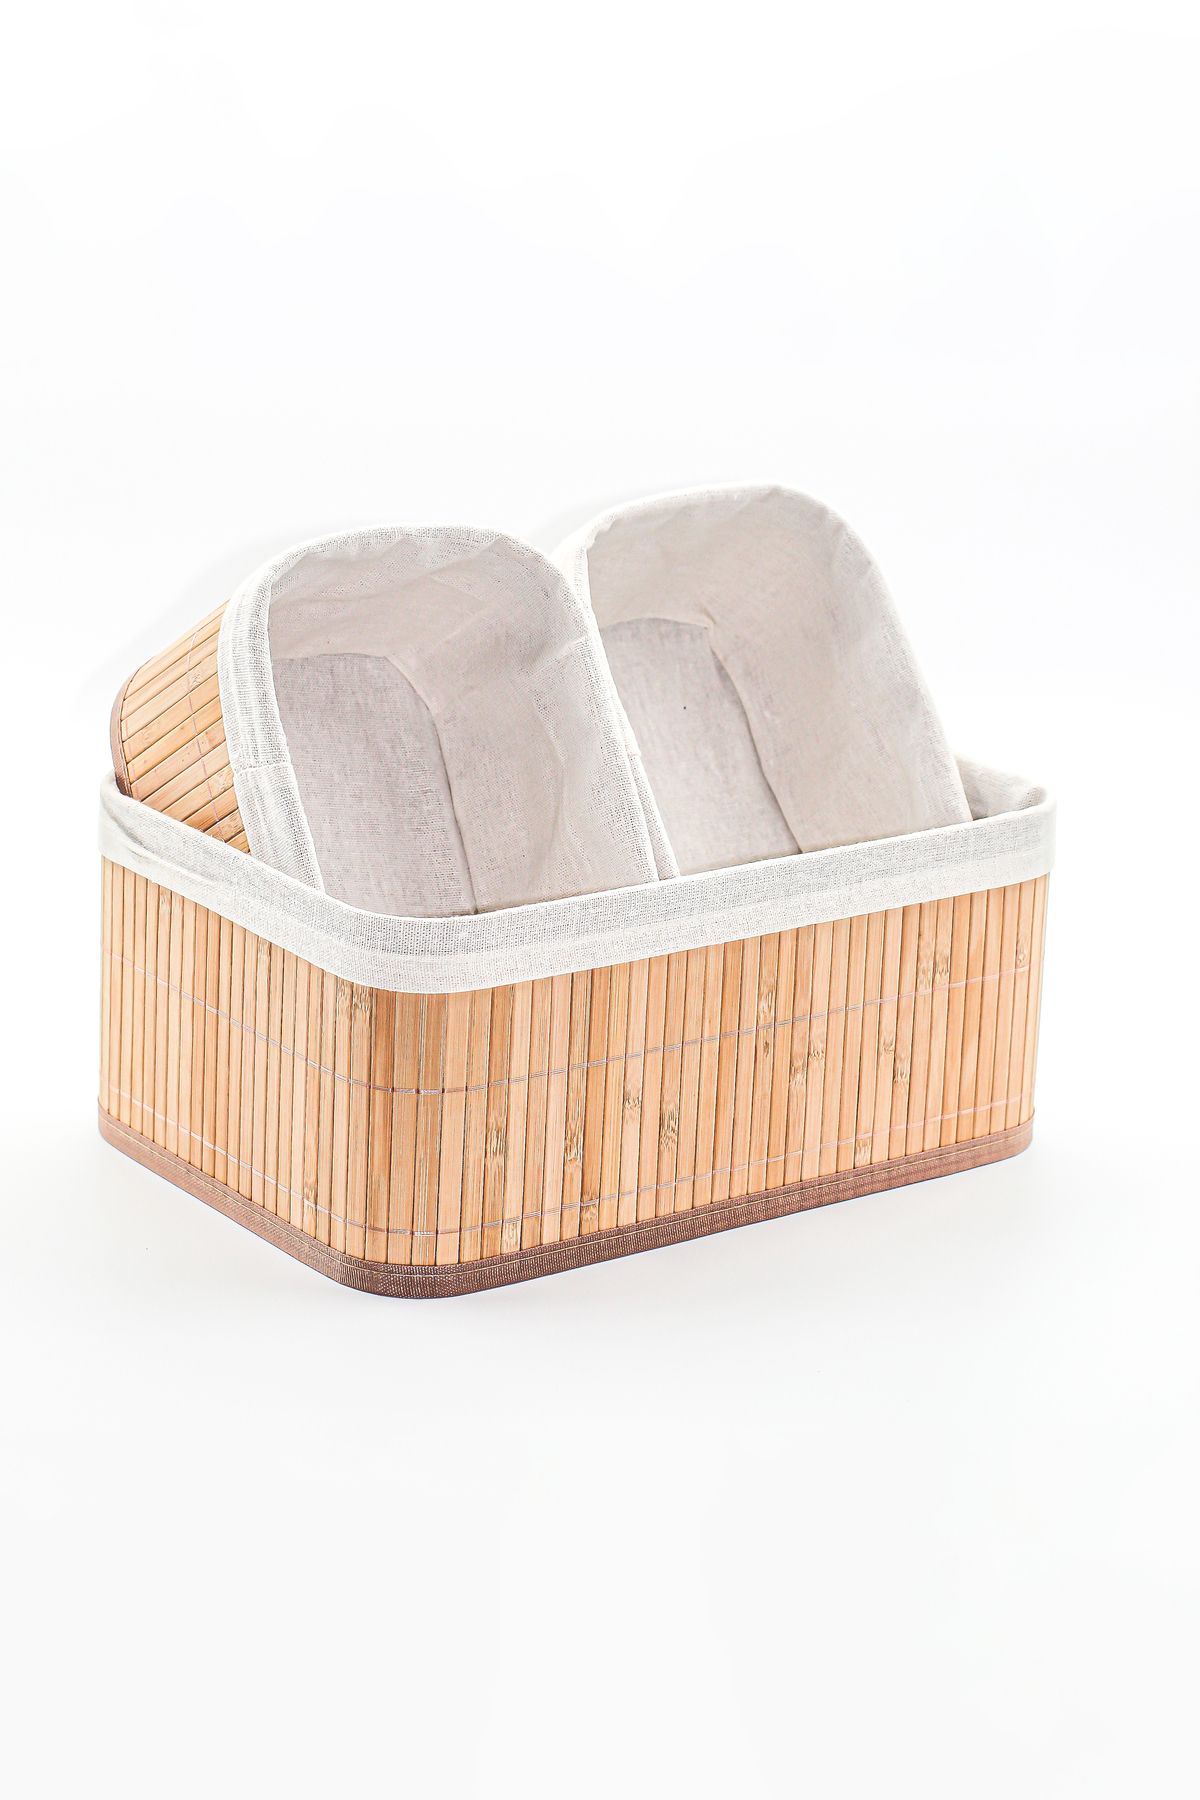 Karçiçeği Home 3'lü Bambu Sepet Doğal Astarlı Çok Amaçlı Saklama Kutusu - Banyo Kozmetik Mutfak Dolap Organizeri